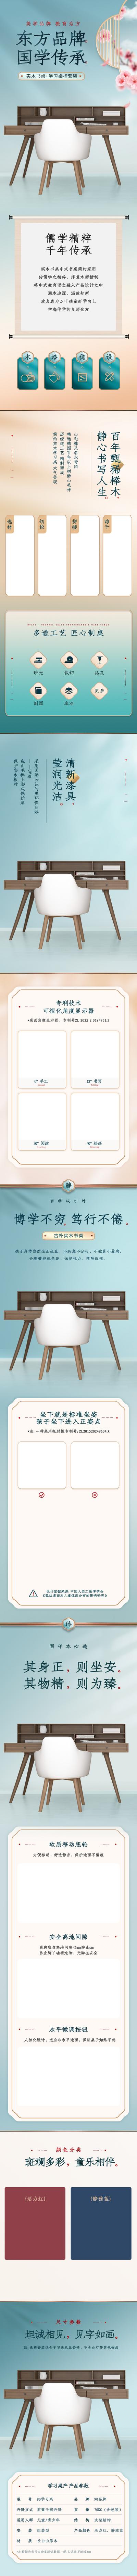 南门网 广告 海报 电商 详情页 专题 东方 美学 家具 品牌 品质 儒学 文化 传承 桌子 椅子 中式